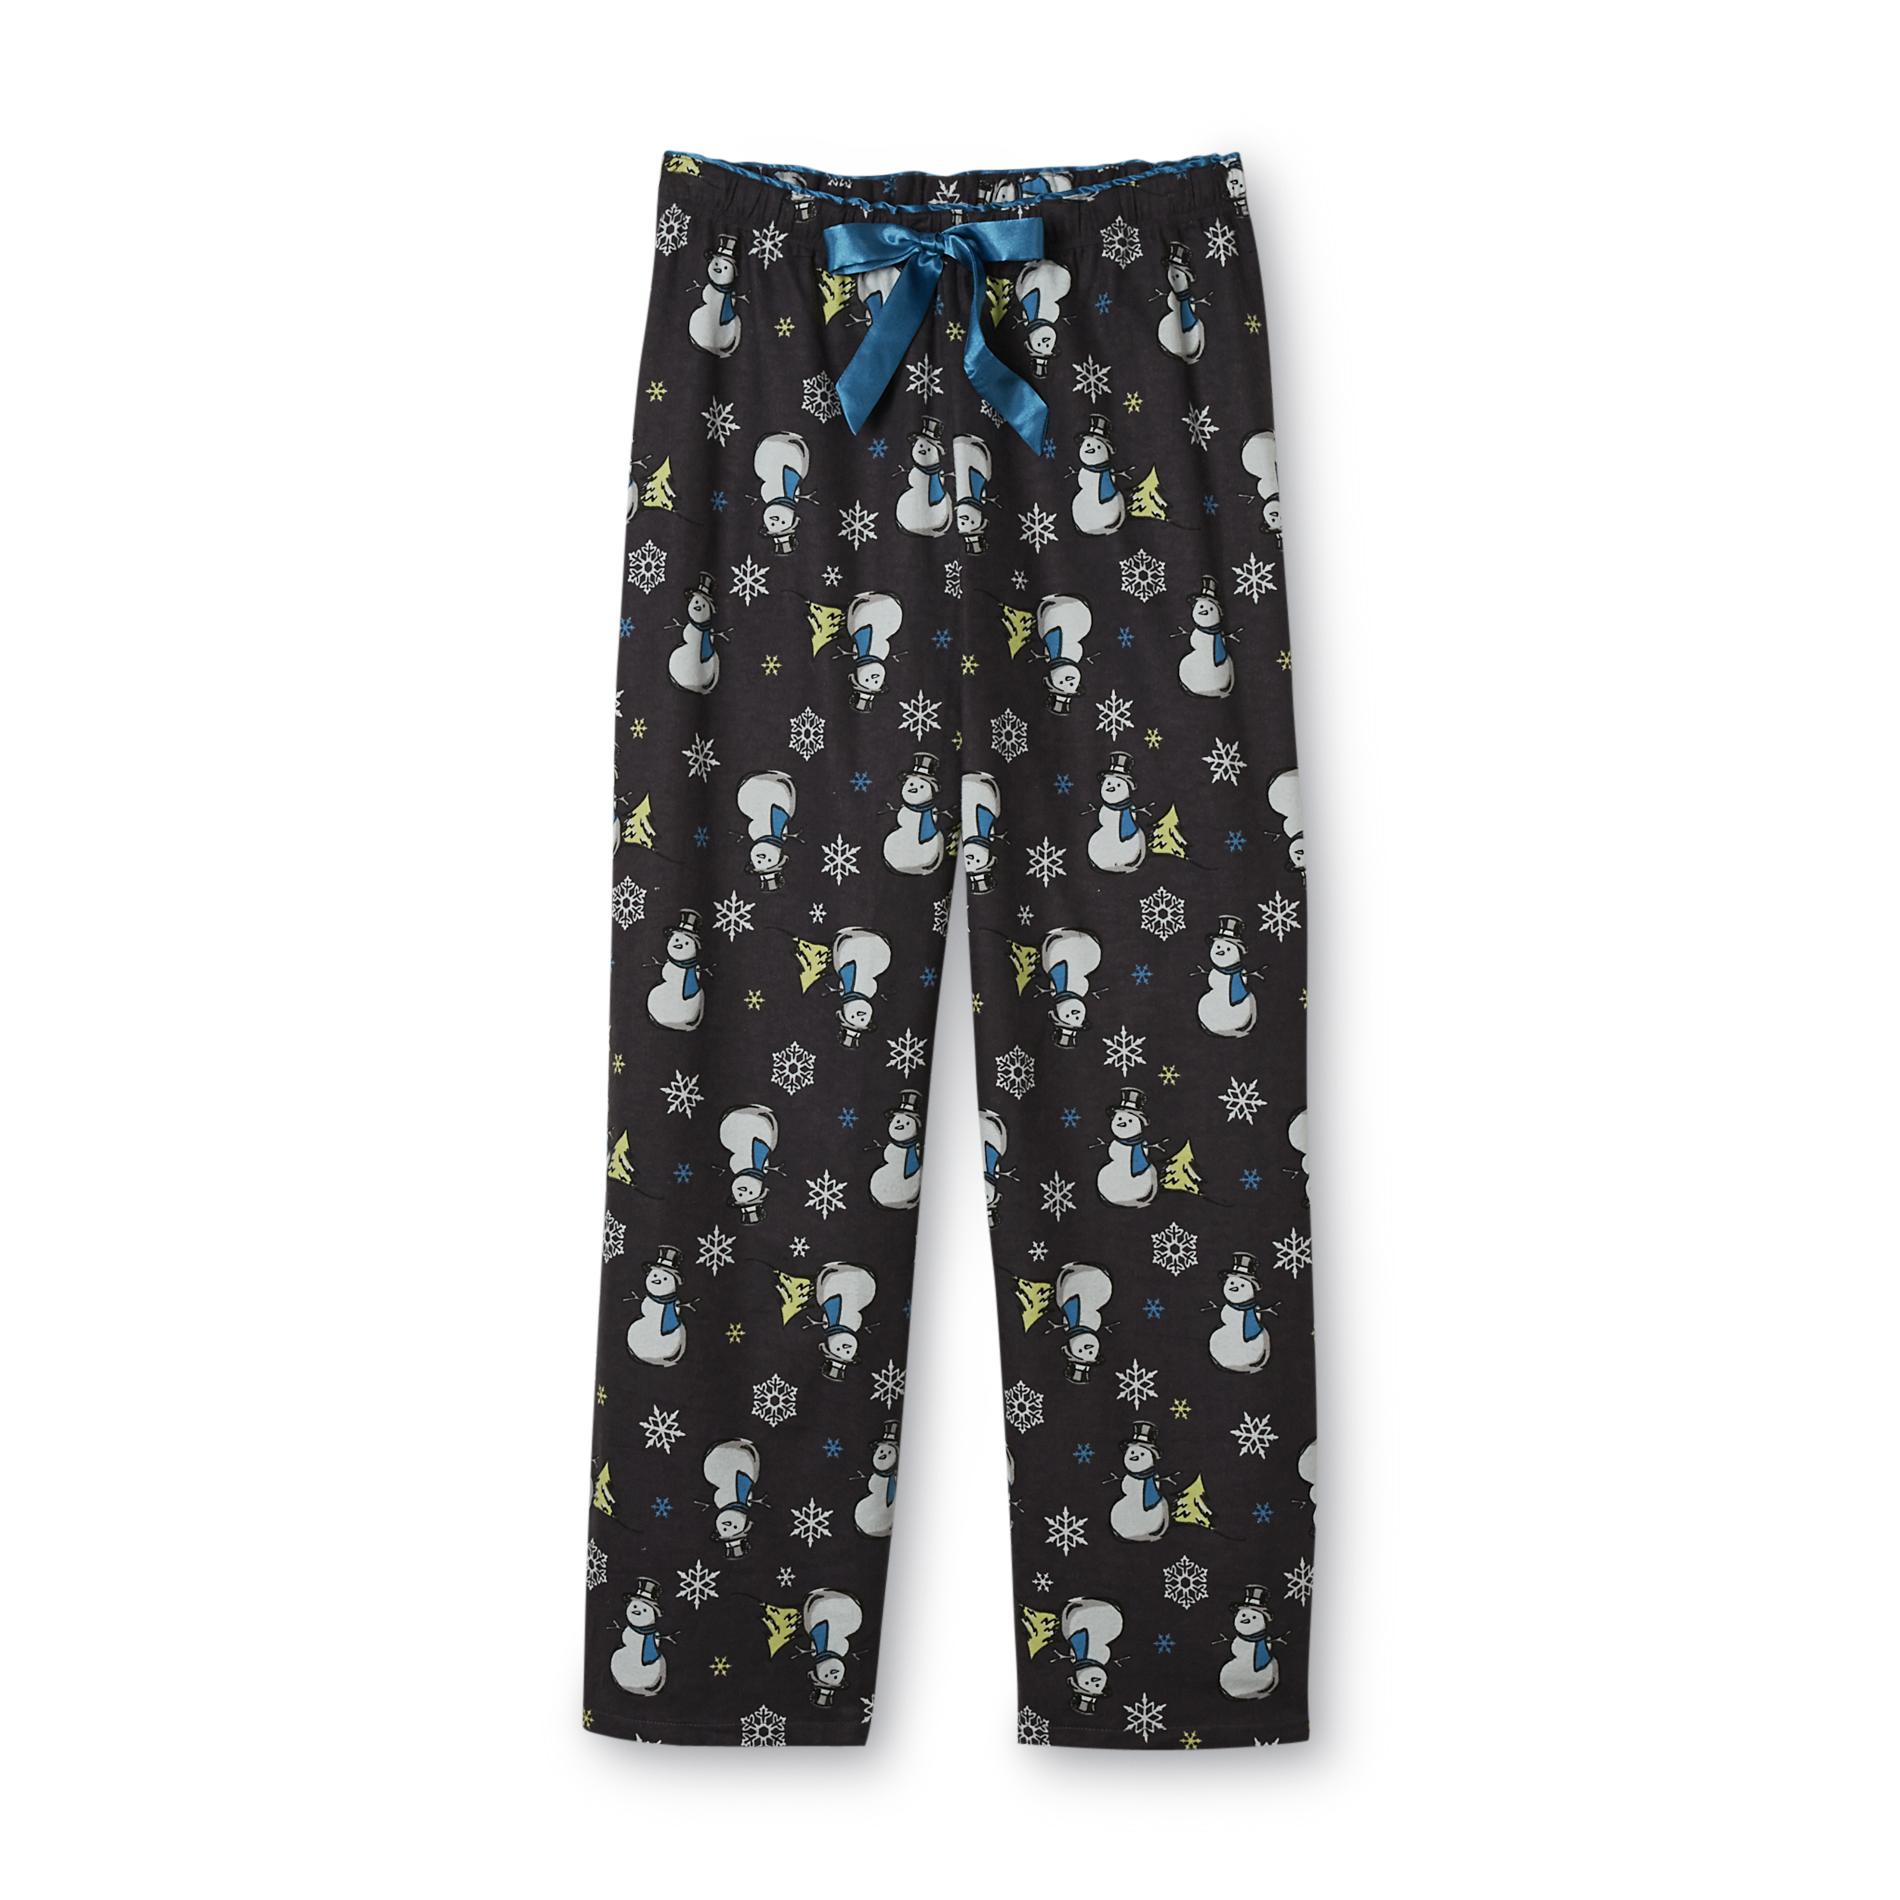 Covington Women's Flannel Pajama Pants - Snowman